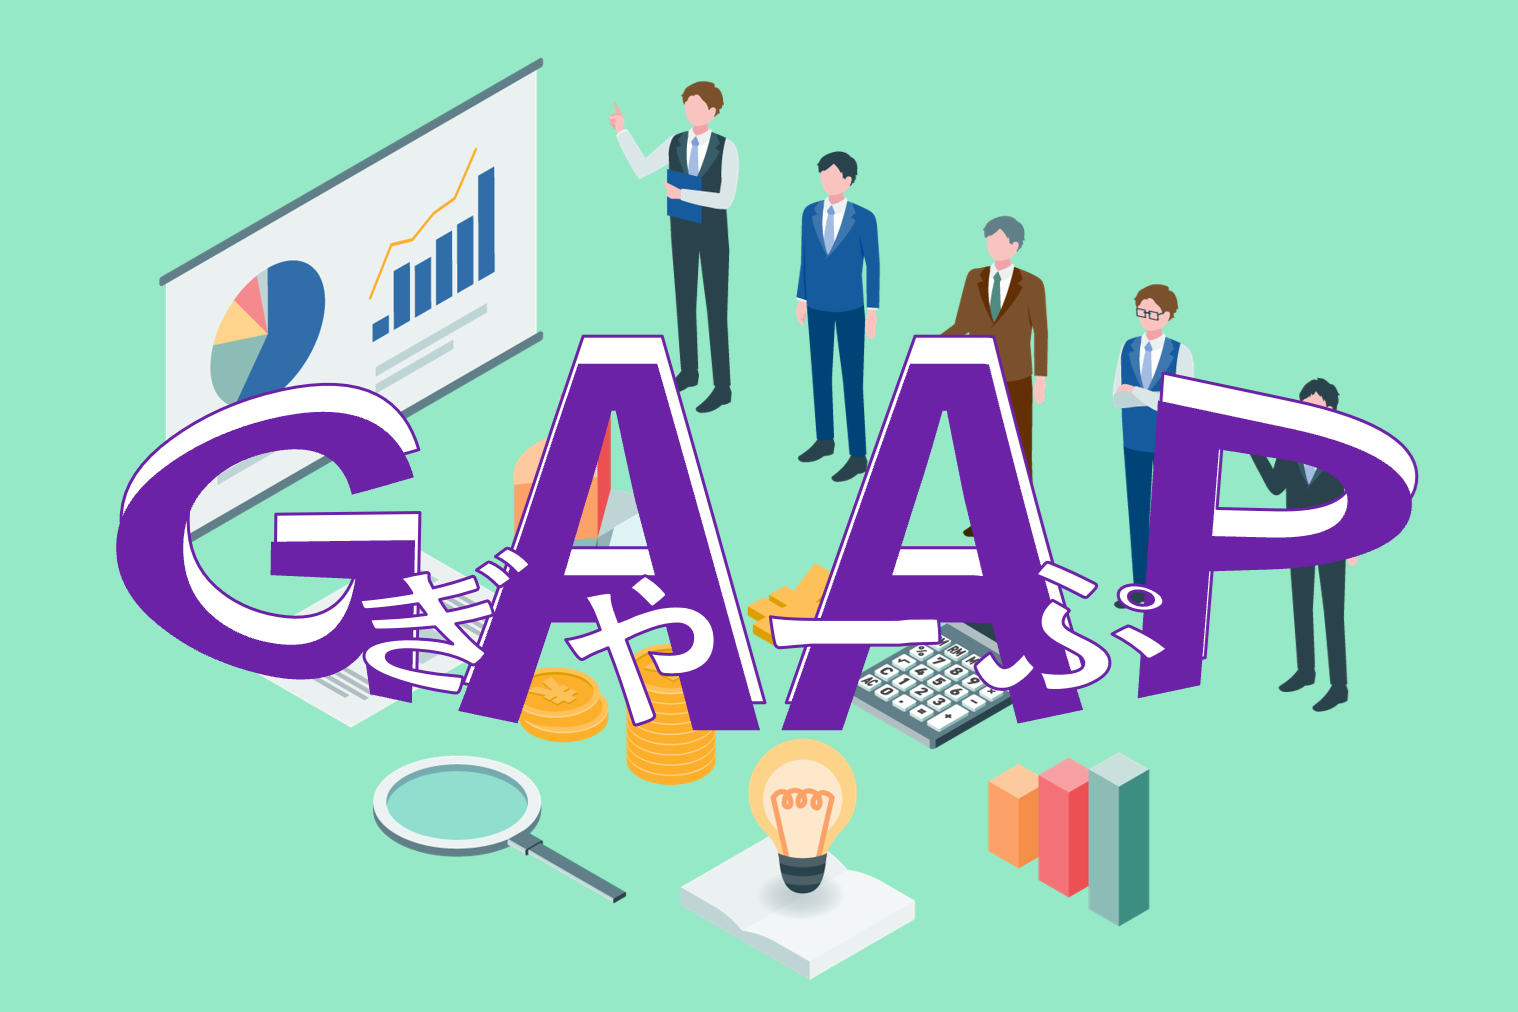 GAAP（ぎゃーぷ）とは、Generally Accepted Accounting Principlesの略であり、「一般に公正妥当と認められる企業会計の基準」のことをさします。GAAPの概要や日本で適用できる会計基準、およびIFRSとの違い等について解説。